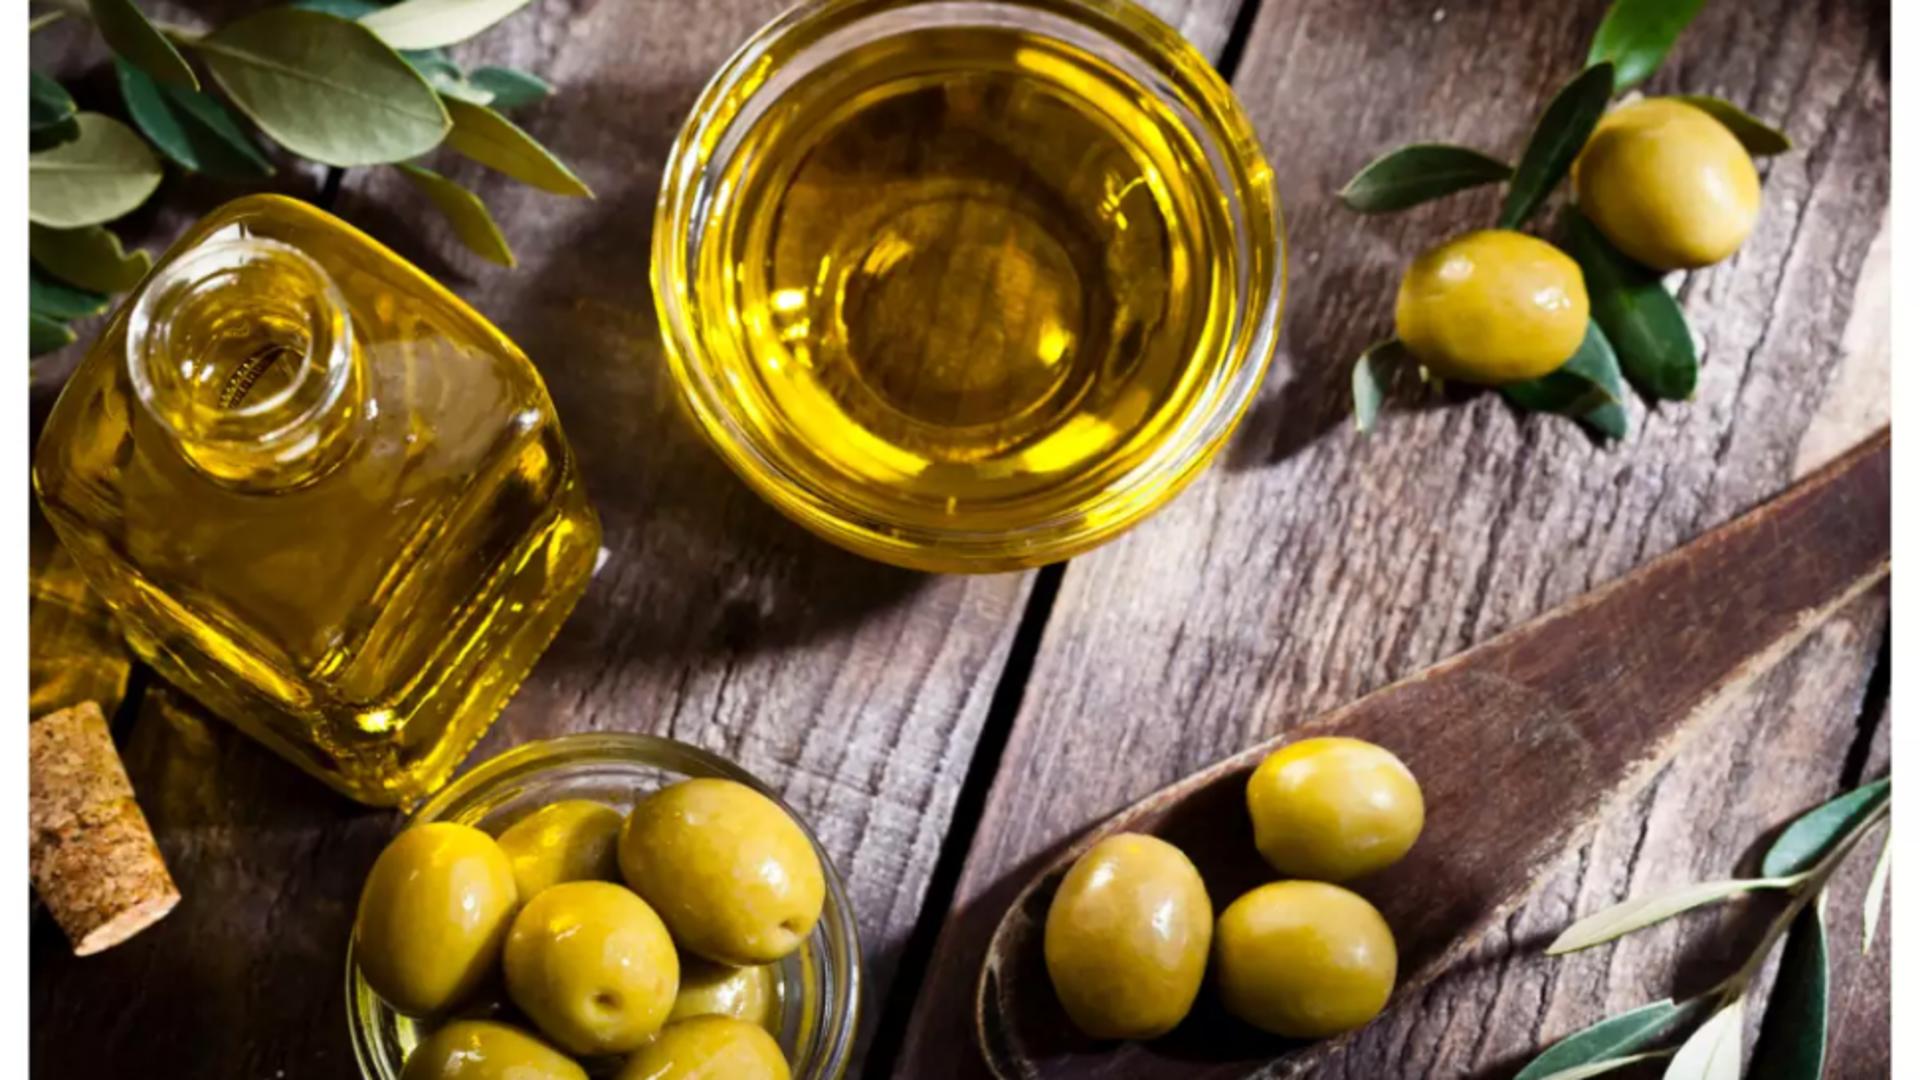 18 lucruri pe care nu le știai despre uleiul de măsline - Când nu trebuie să fie folosit - Este periculos